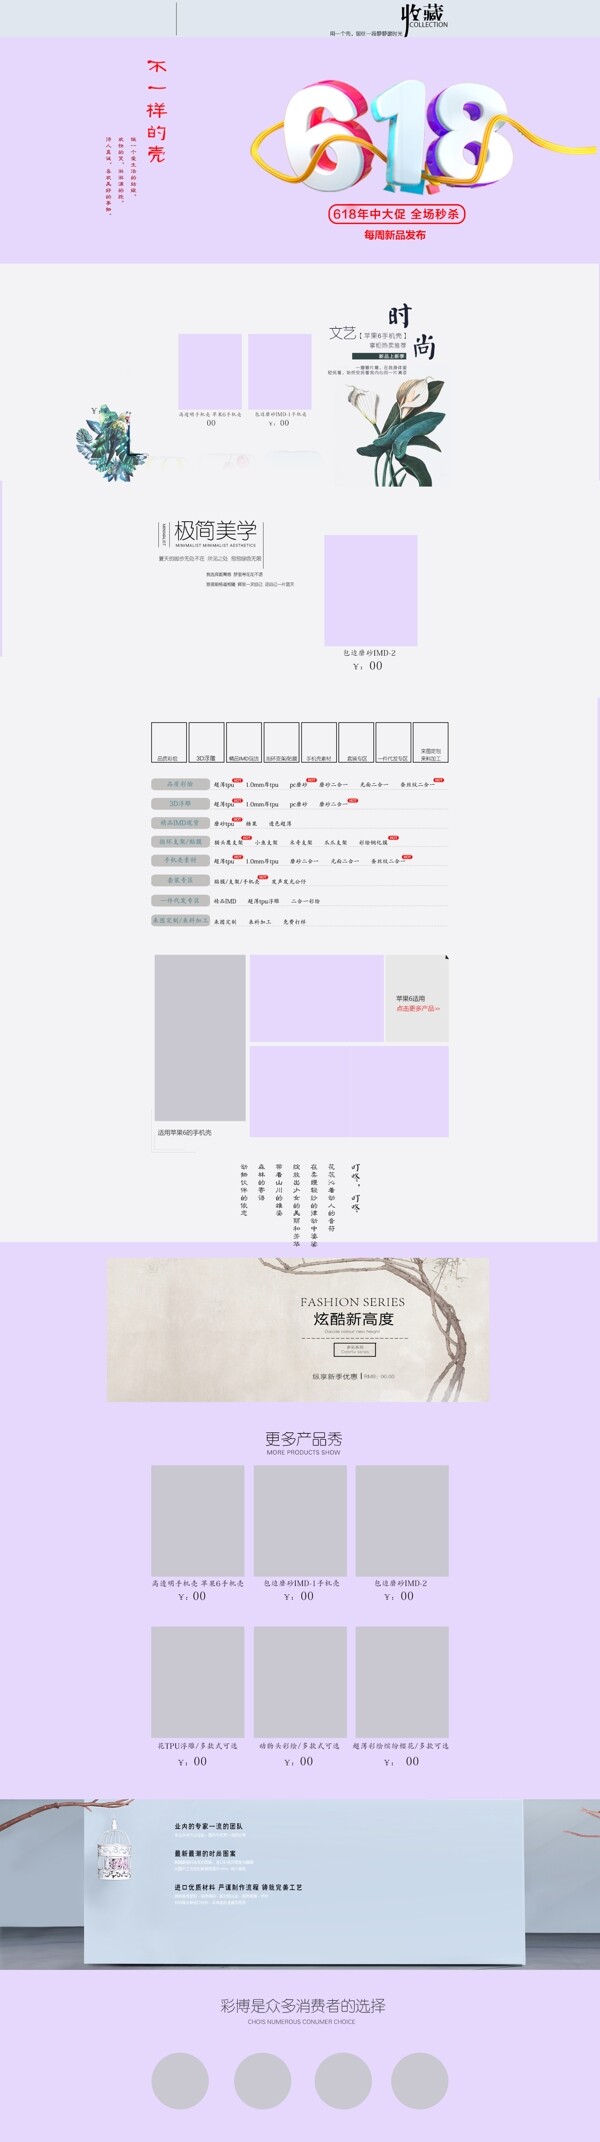 618手机壳电商促销紫色文艺淘宝首页